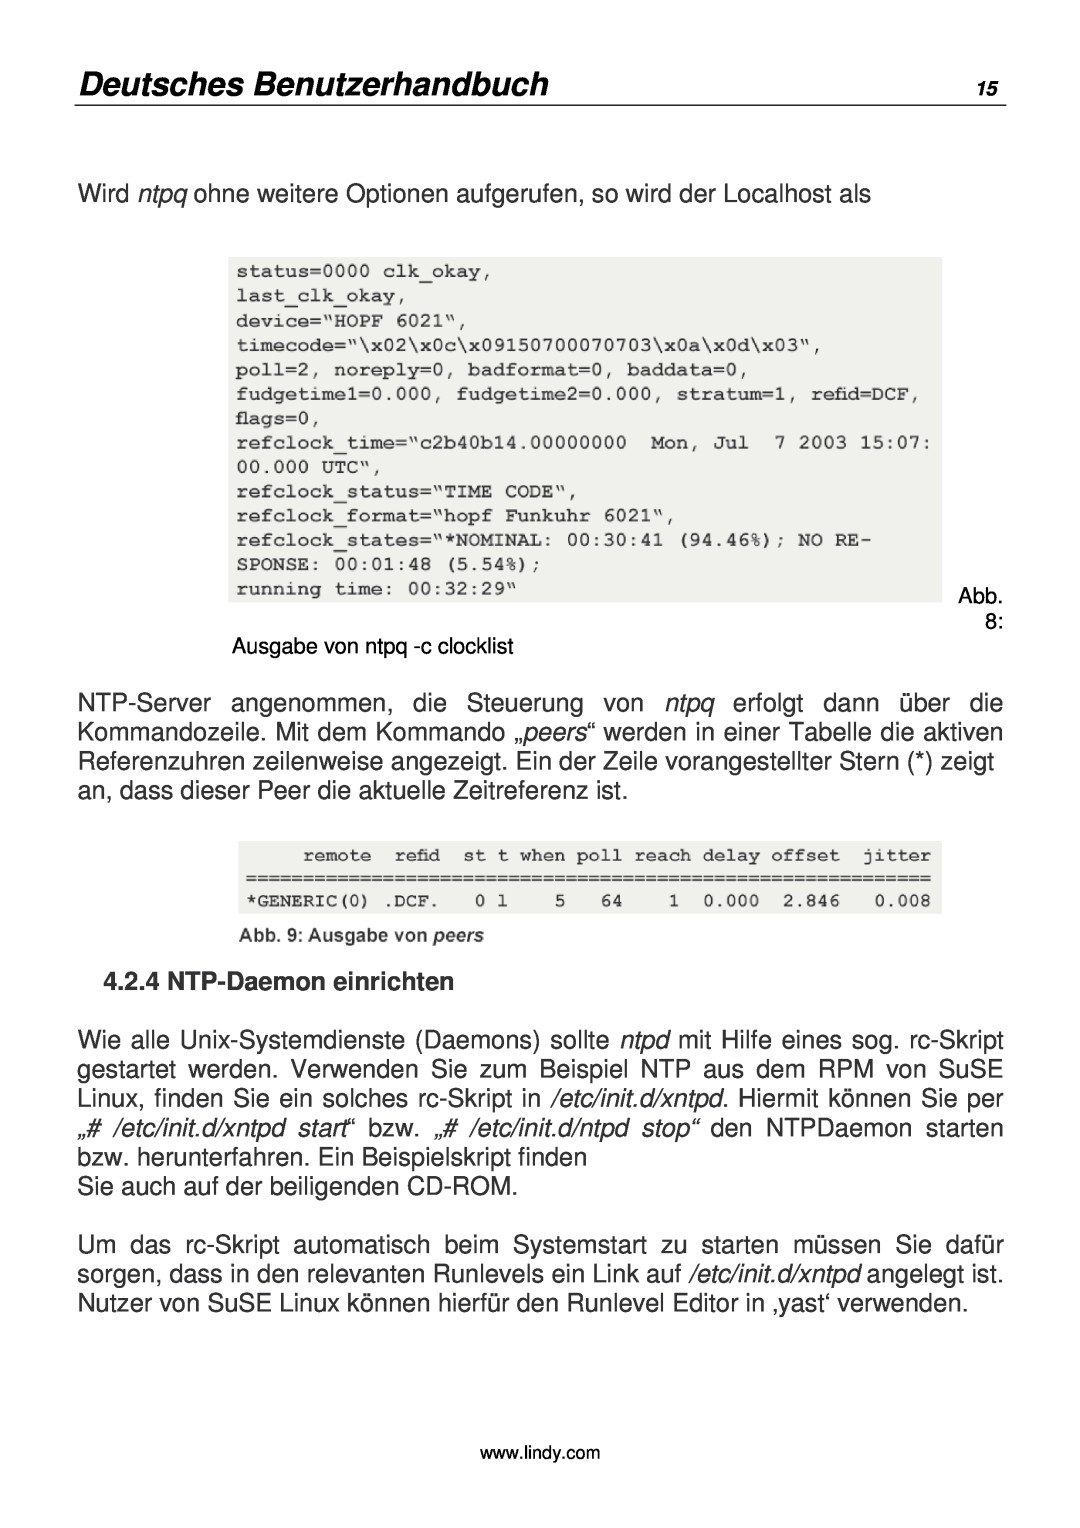 Lindy 20988 manual Deutsches Benutzerhandbuch, NTP-Daemon einrichten 